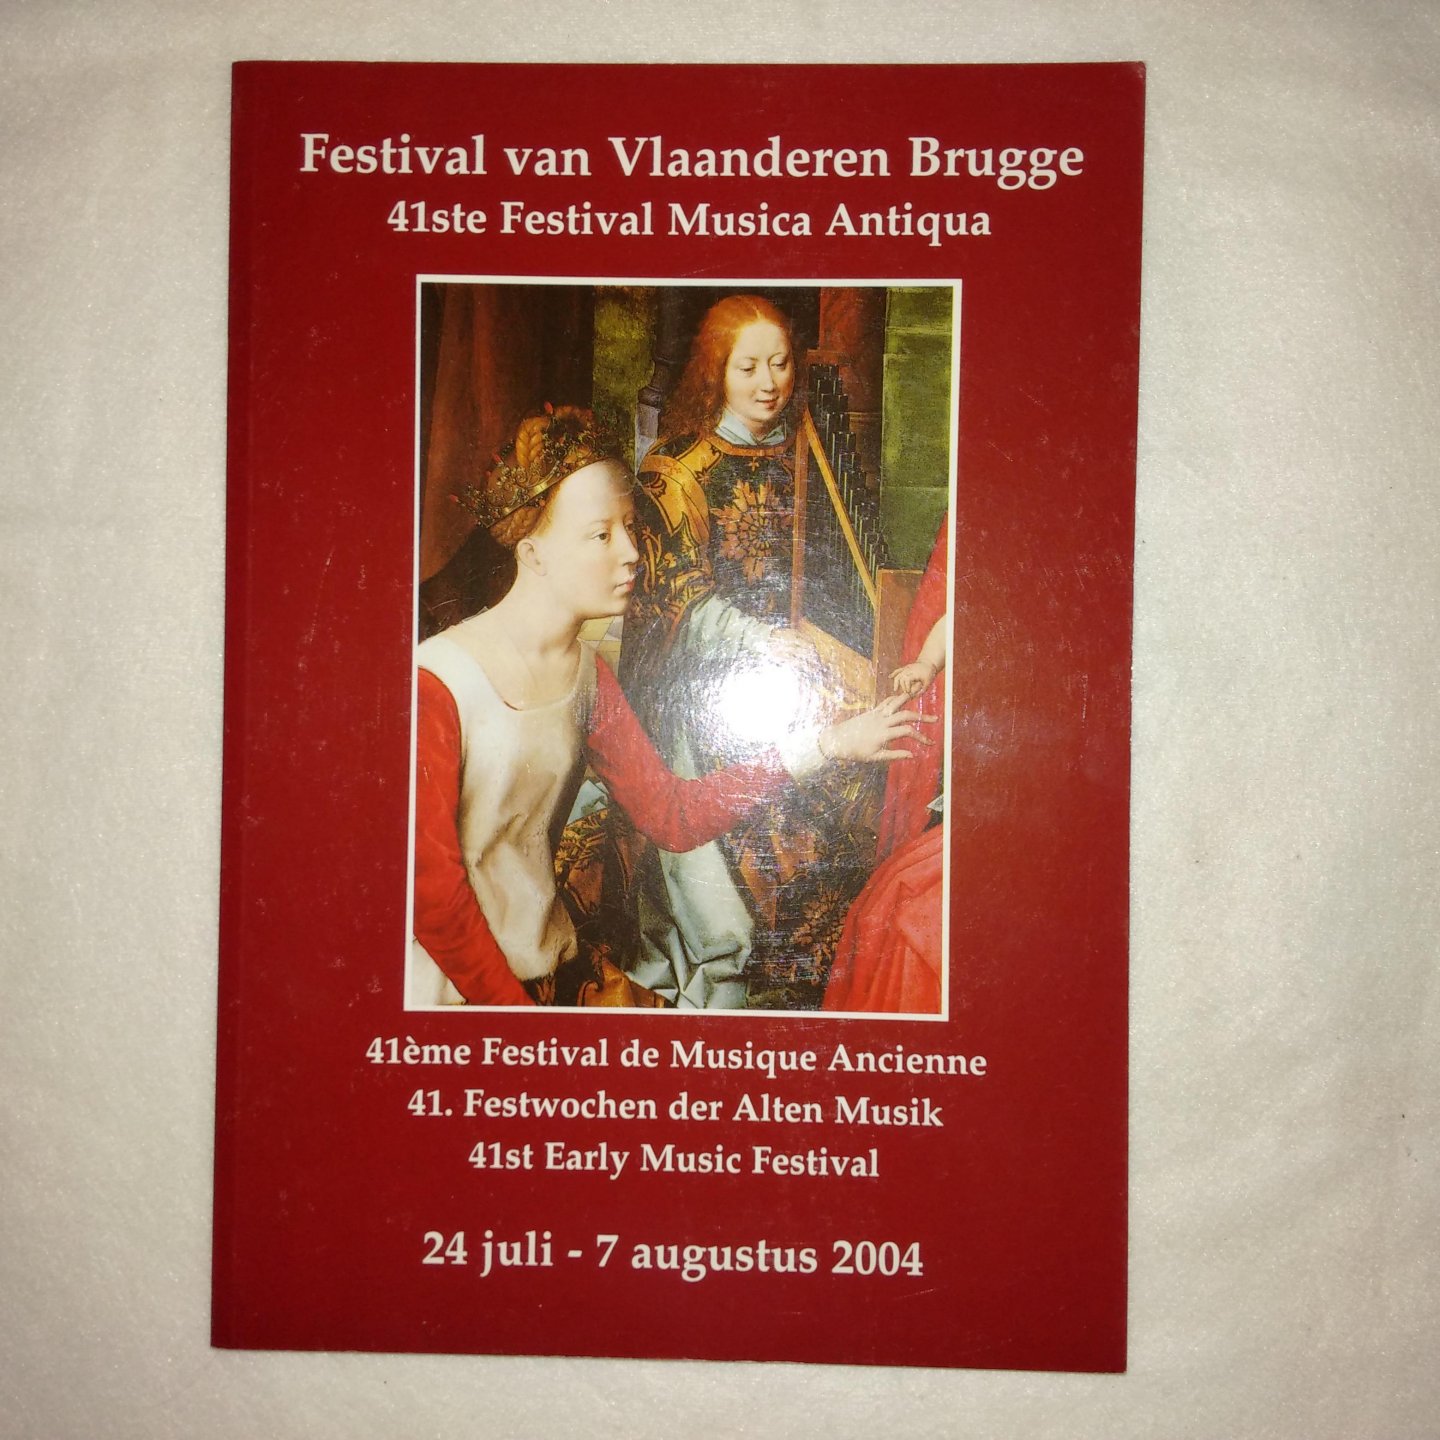 Dewitte, Robrecht eindredactie - Festival van Vlaanderen Brugge. 41ste Festival Musica Antiqua